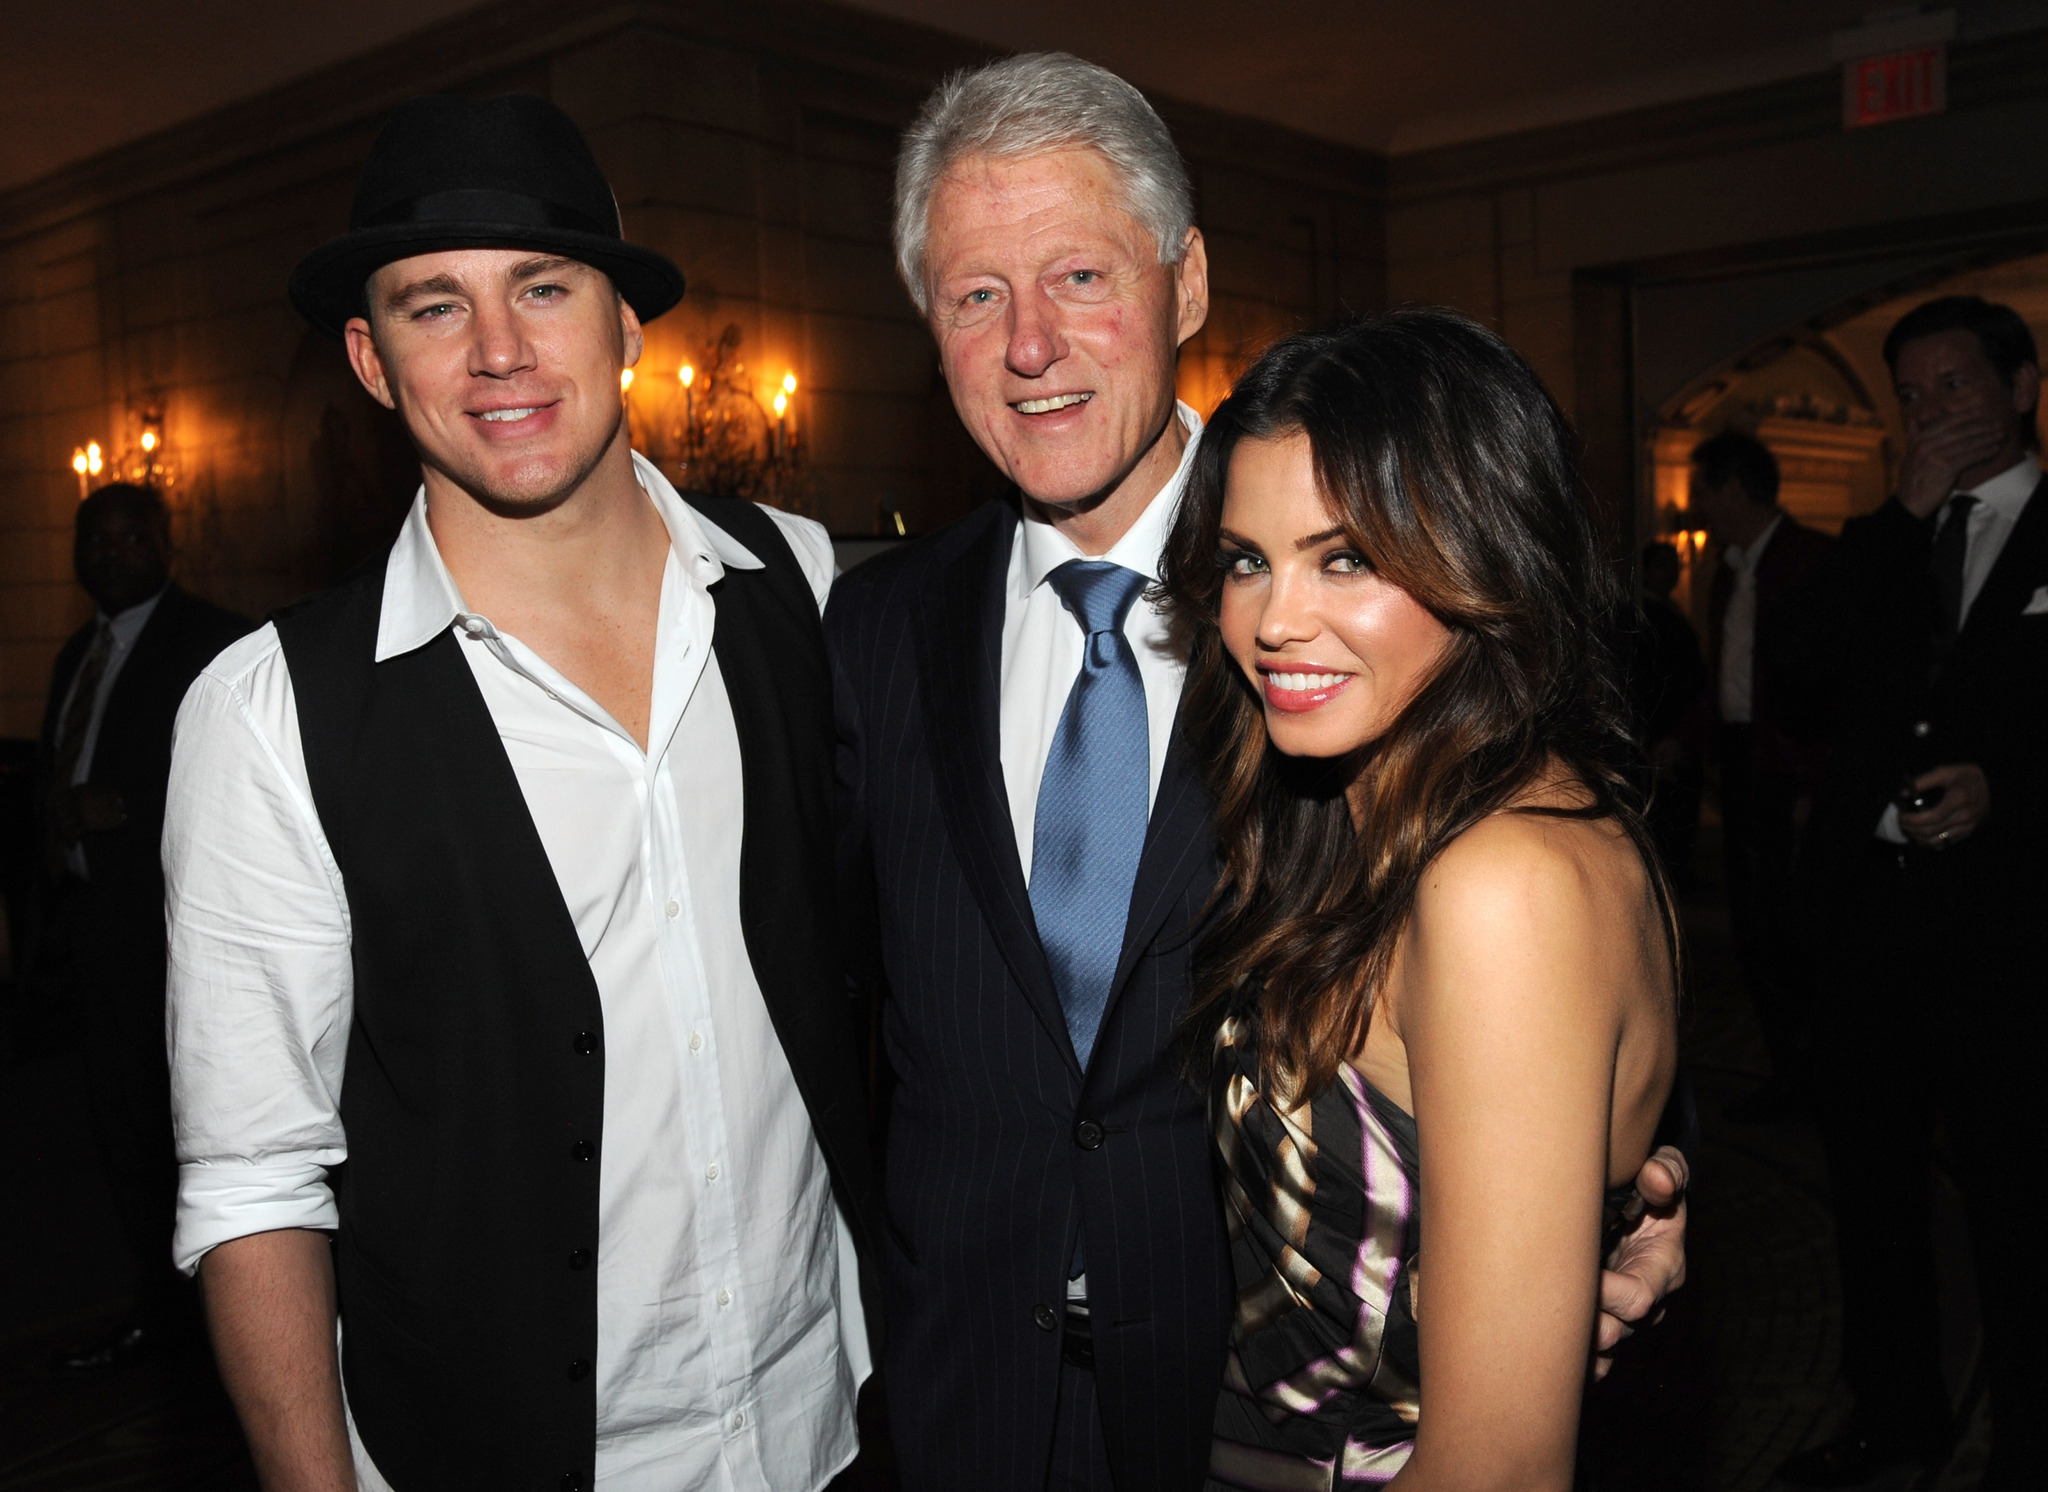 Bill Clinton, Channing Tatum and Jenna Dewan Tatum